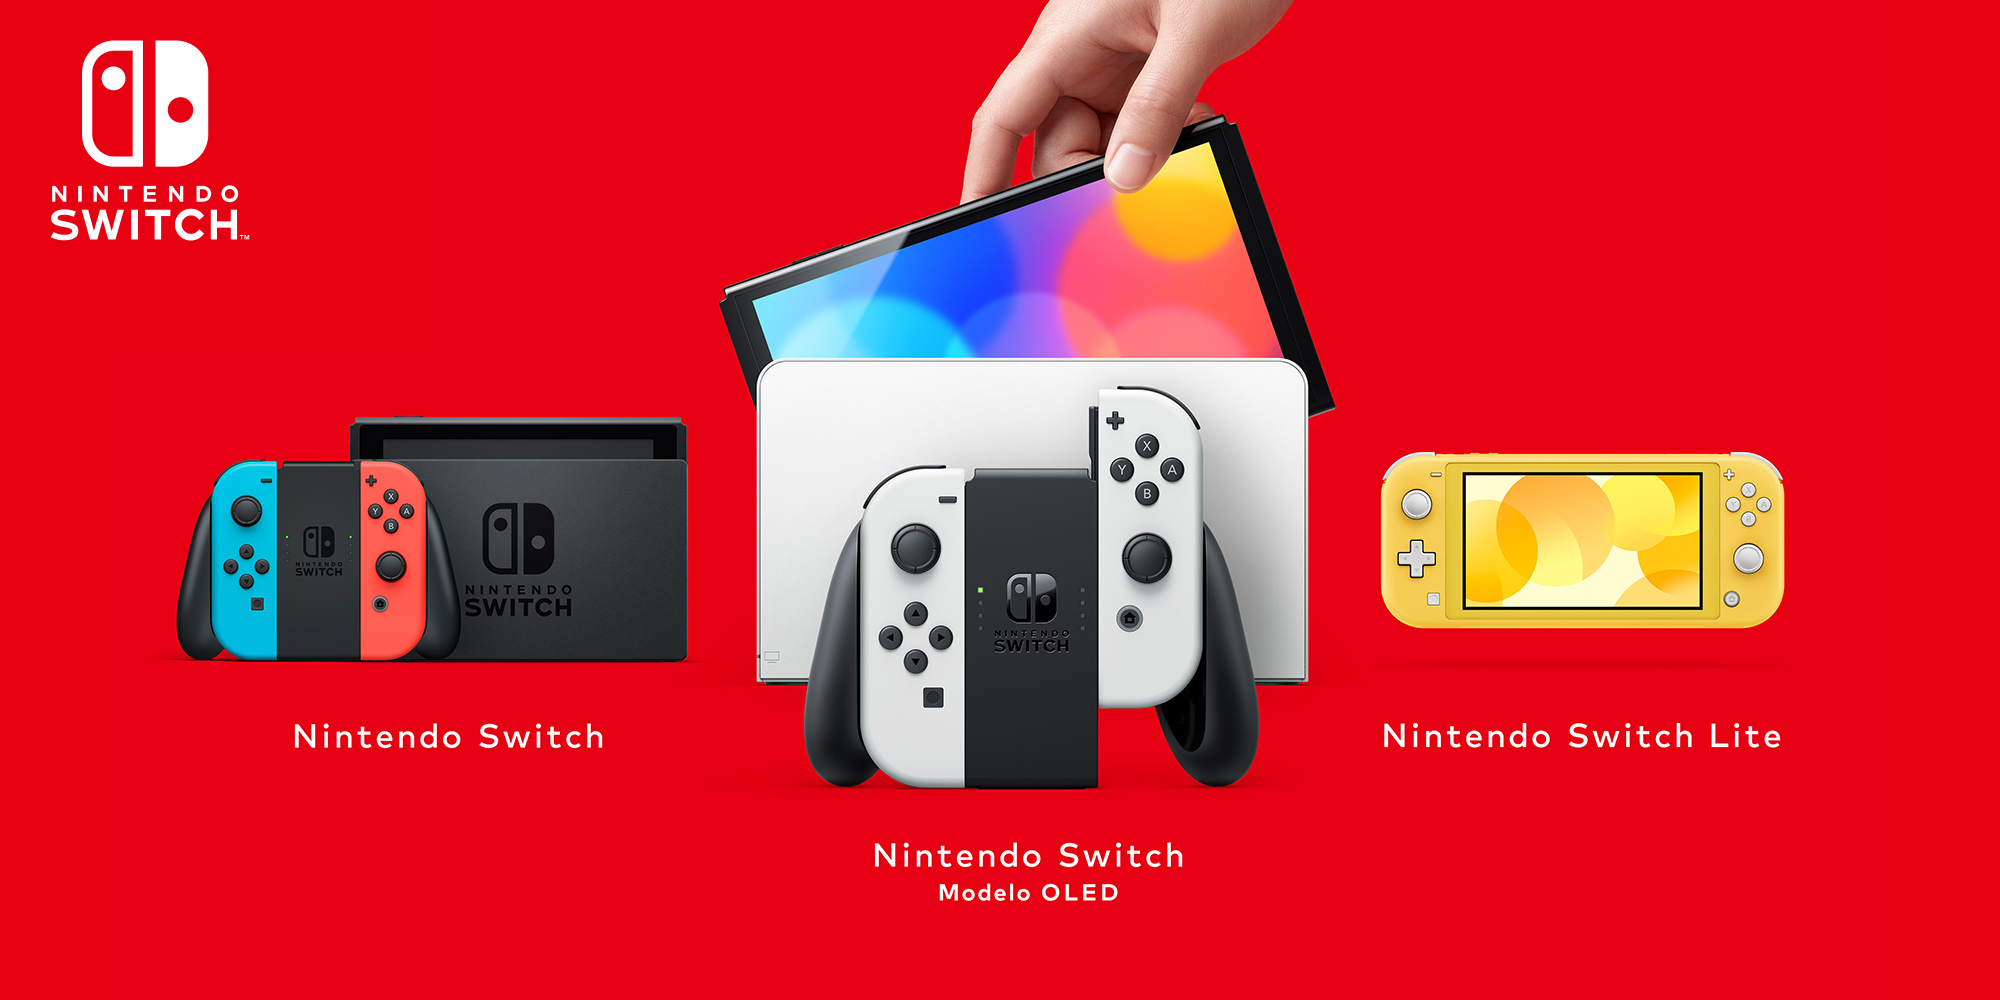 Recebeste uma Nintendo Switch no Natal? Descobre tudo sobre a tua nova consola!